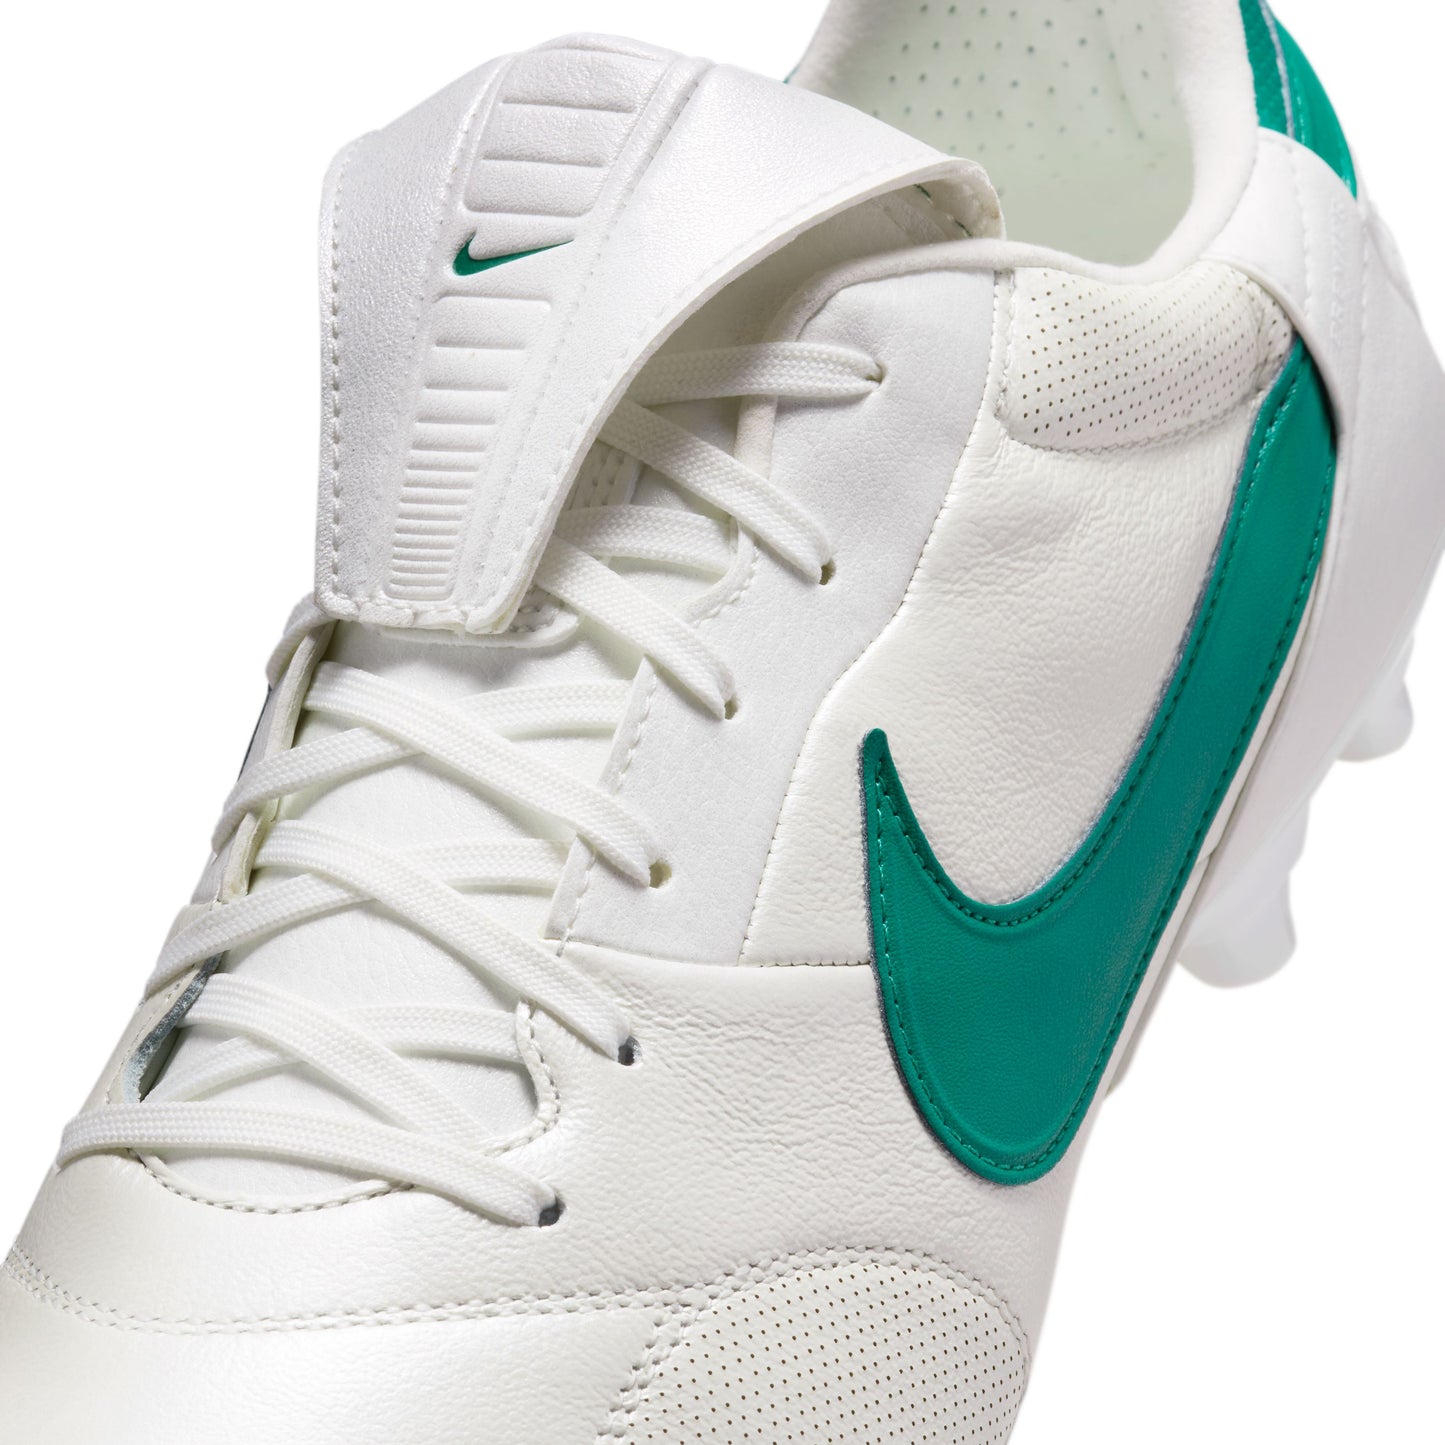 Nike Premier 3 FG Soccer Cleats White Green